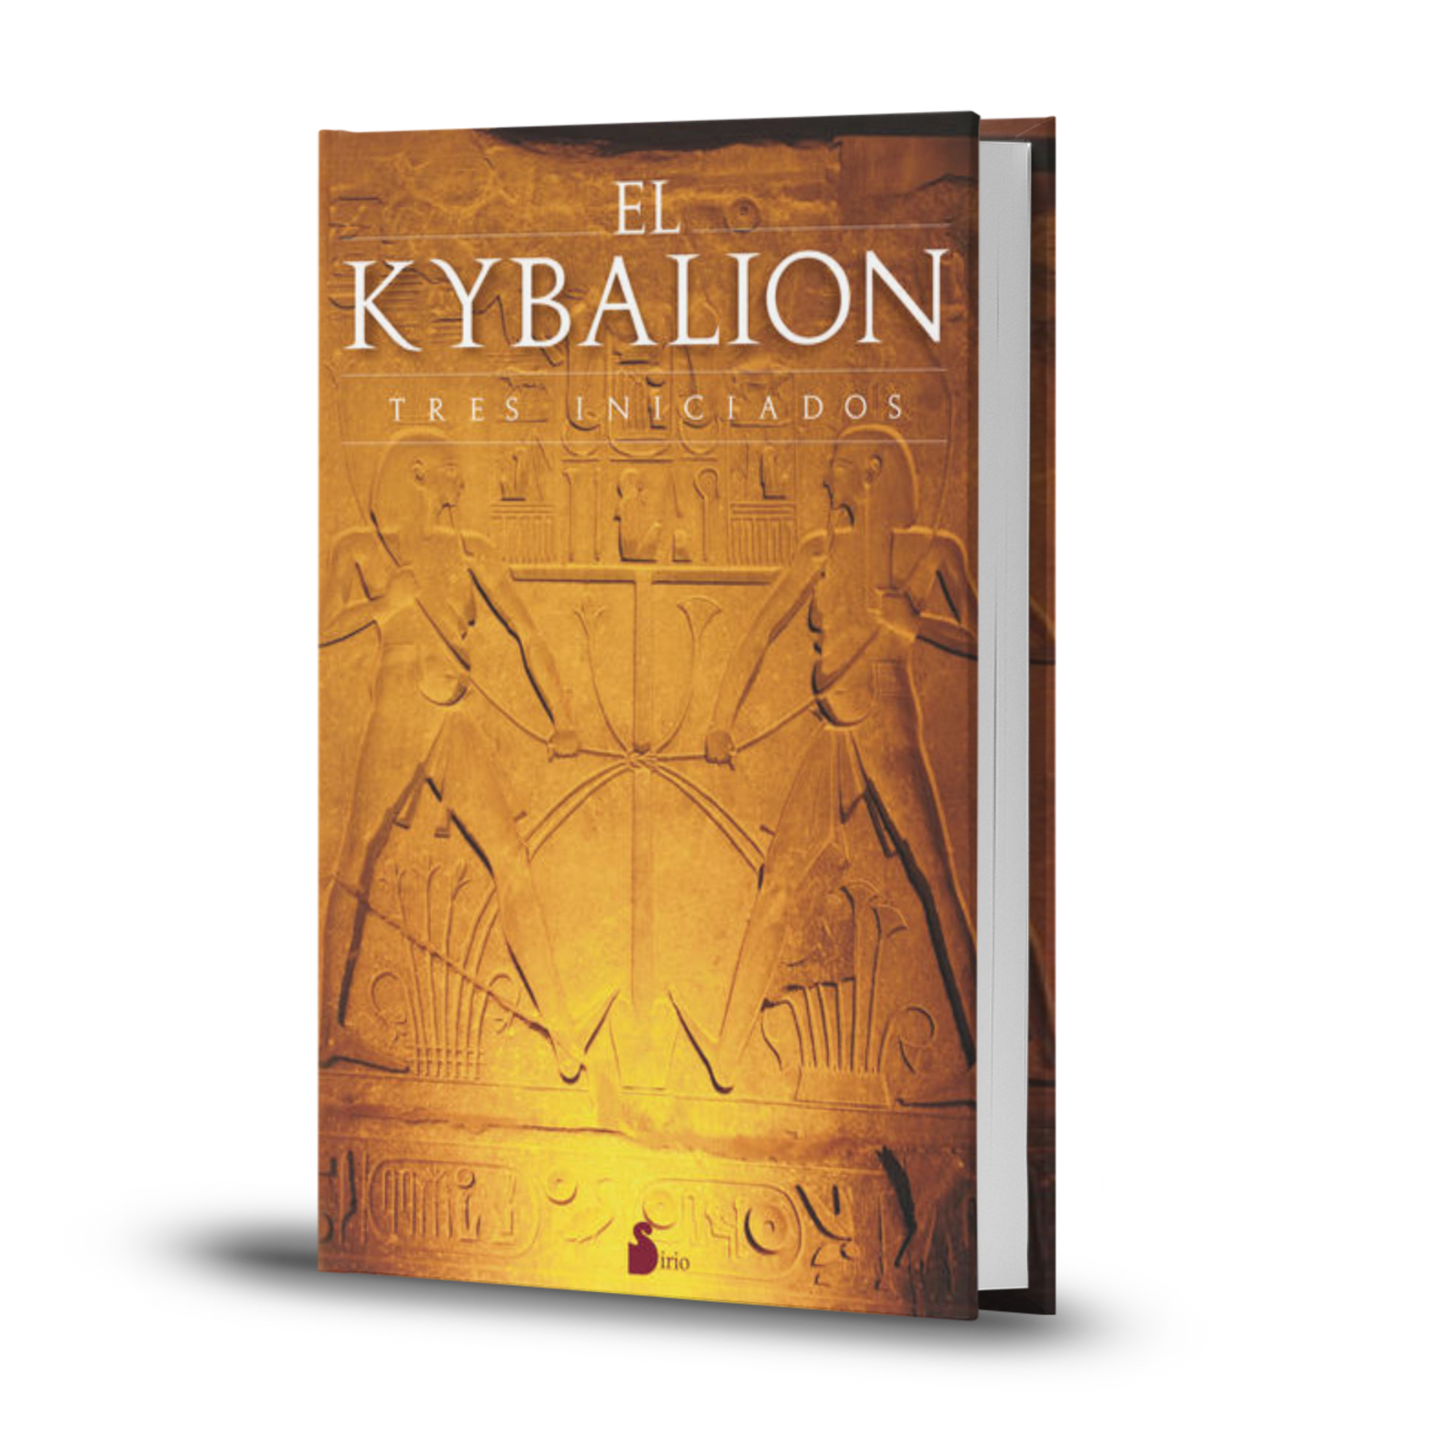 El Kybalion. Tres iniciados - Hermes Trismegisto